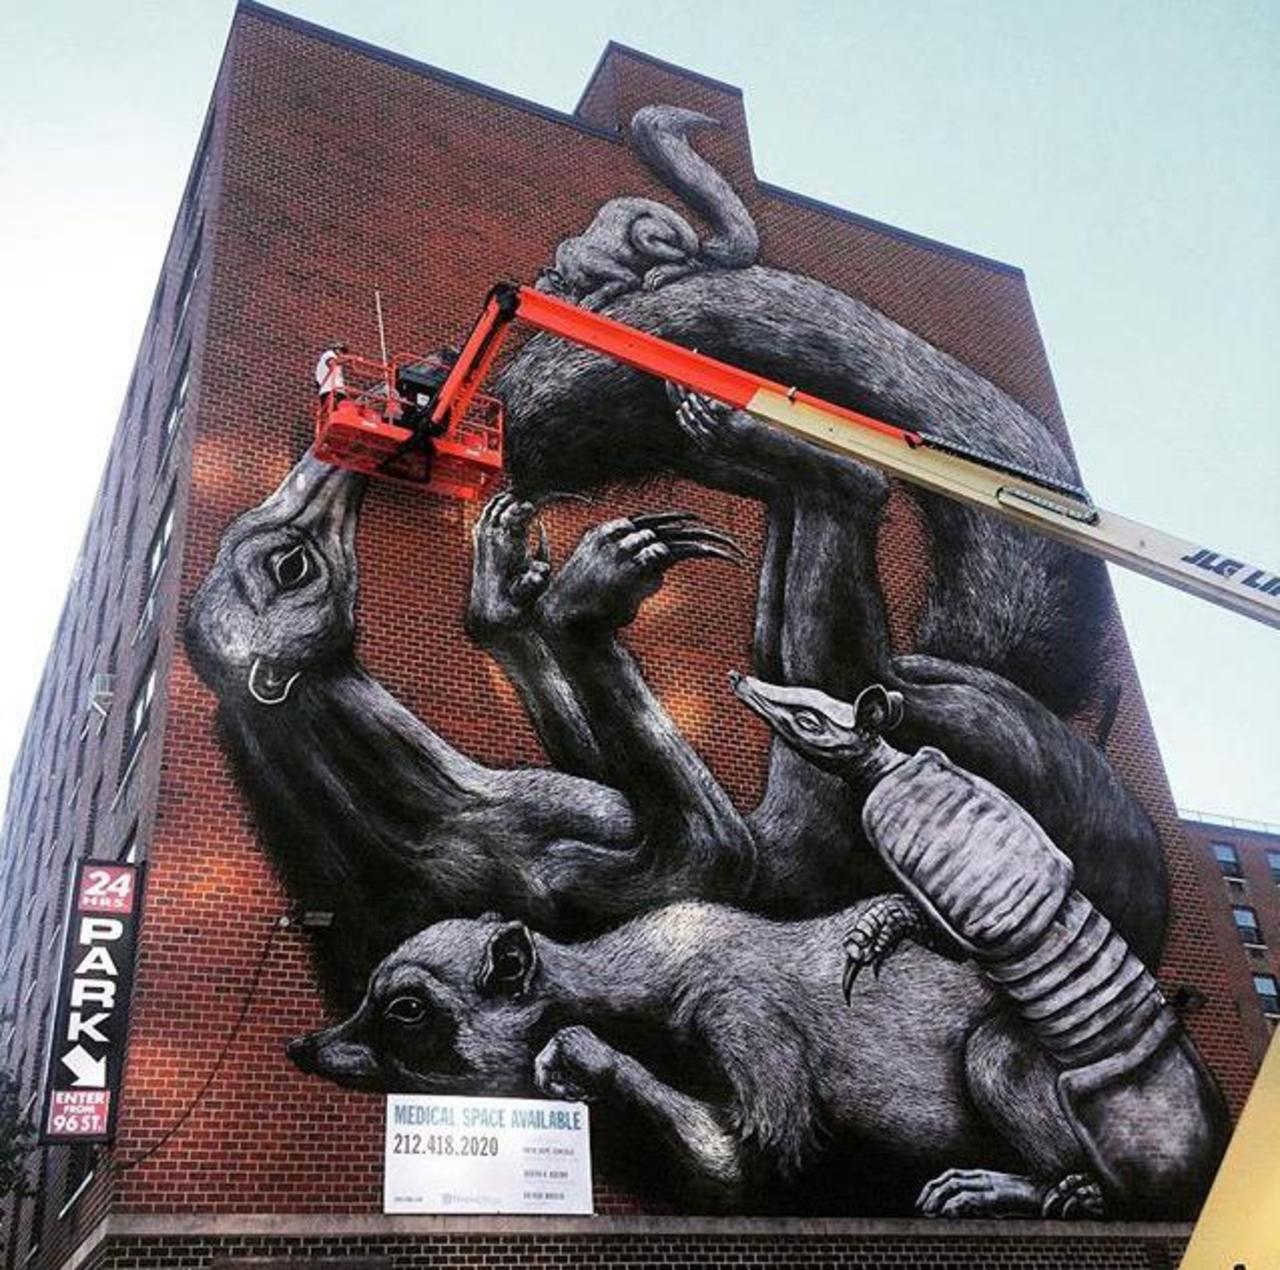 Street Art in progress by ROA in NYC

#art #graffiti #mural #streetart http://t.co/Hc79JzT2xP